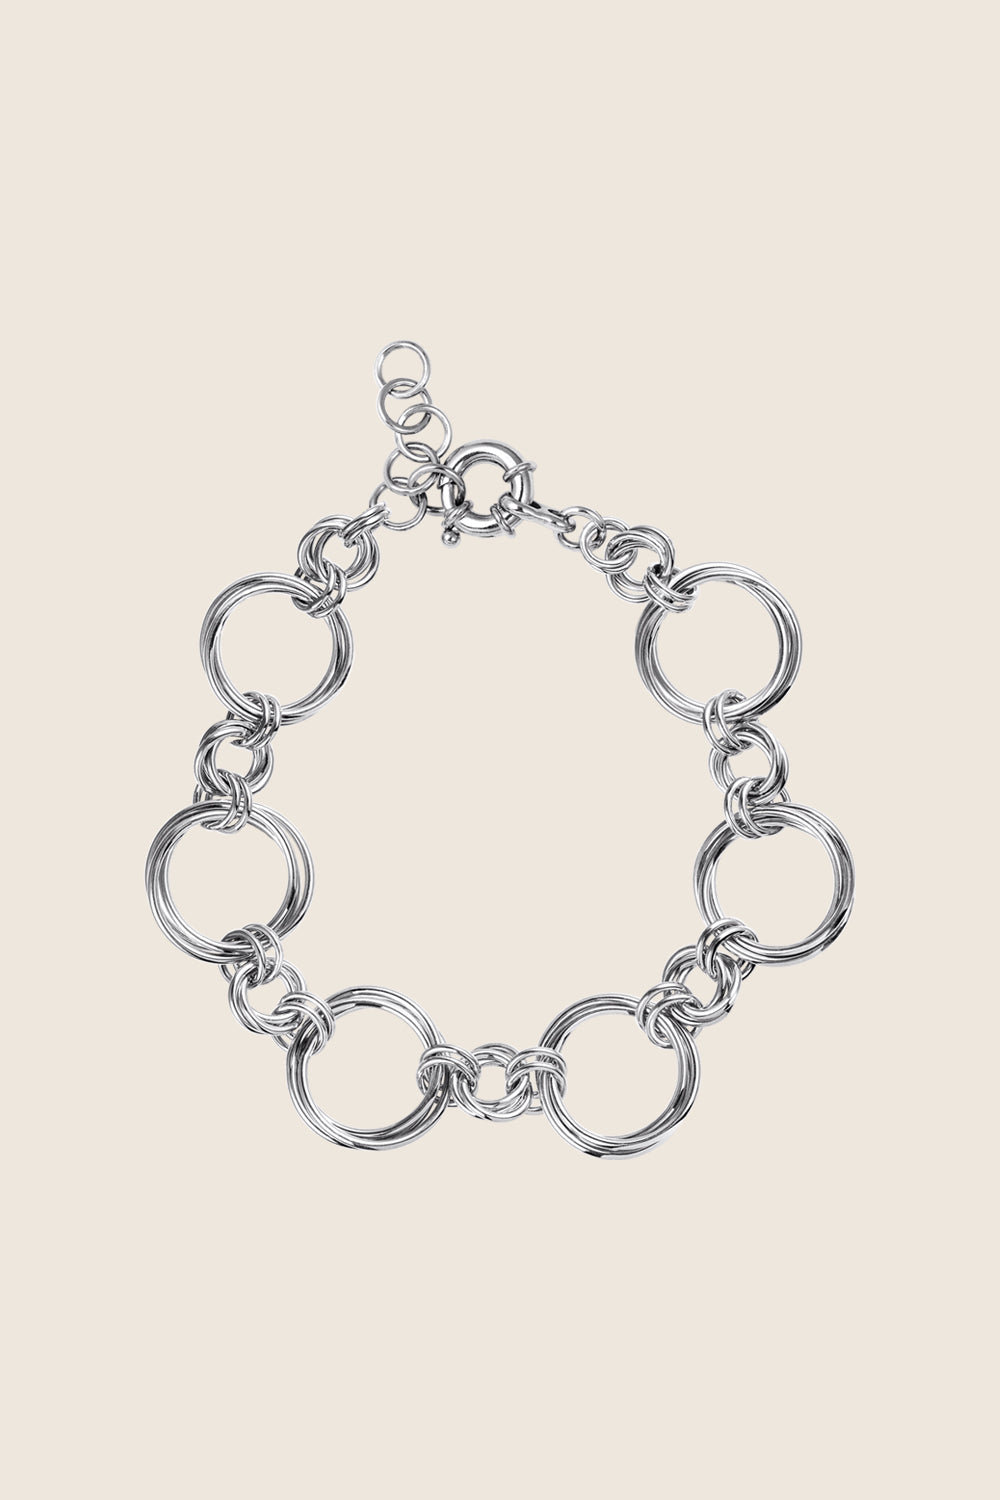 bransoletka łańcuch srebro 925 TELA polska biżuteria UMIAR ręczne wykonanie